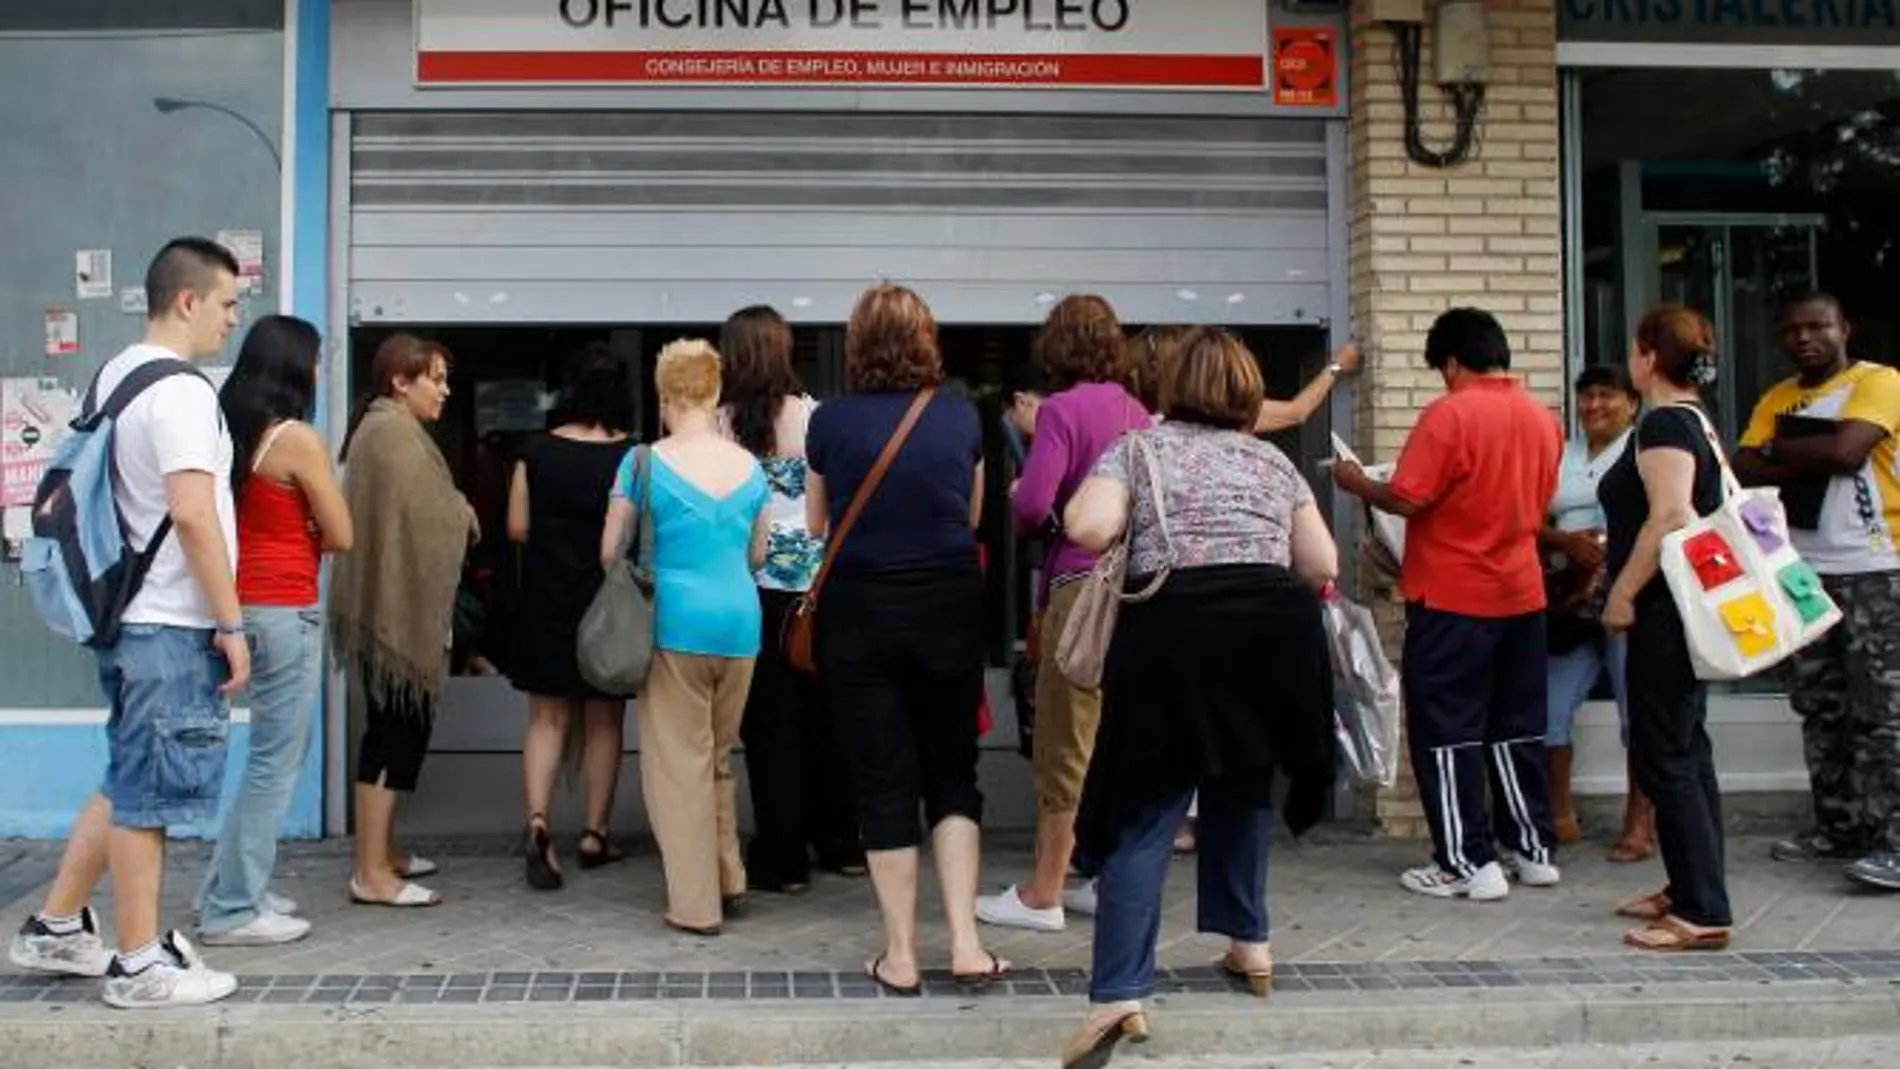 En un tercio de los hogares españoles no trabaja nadie